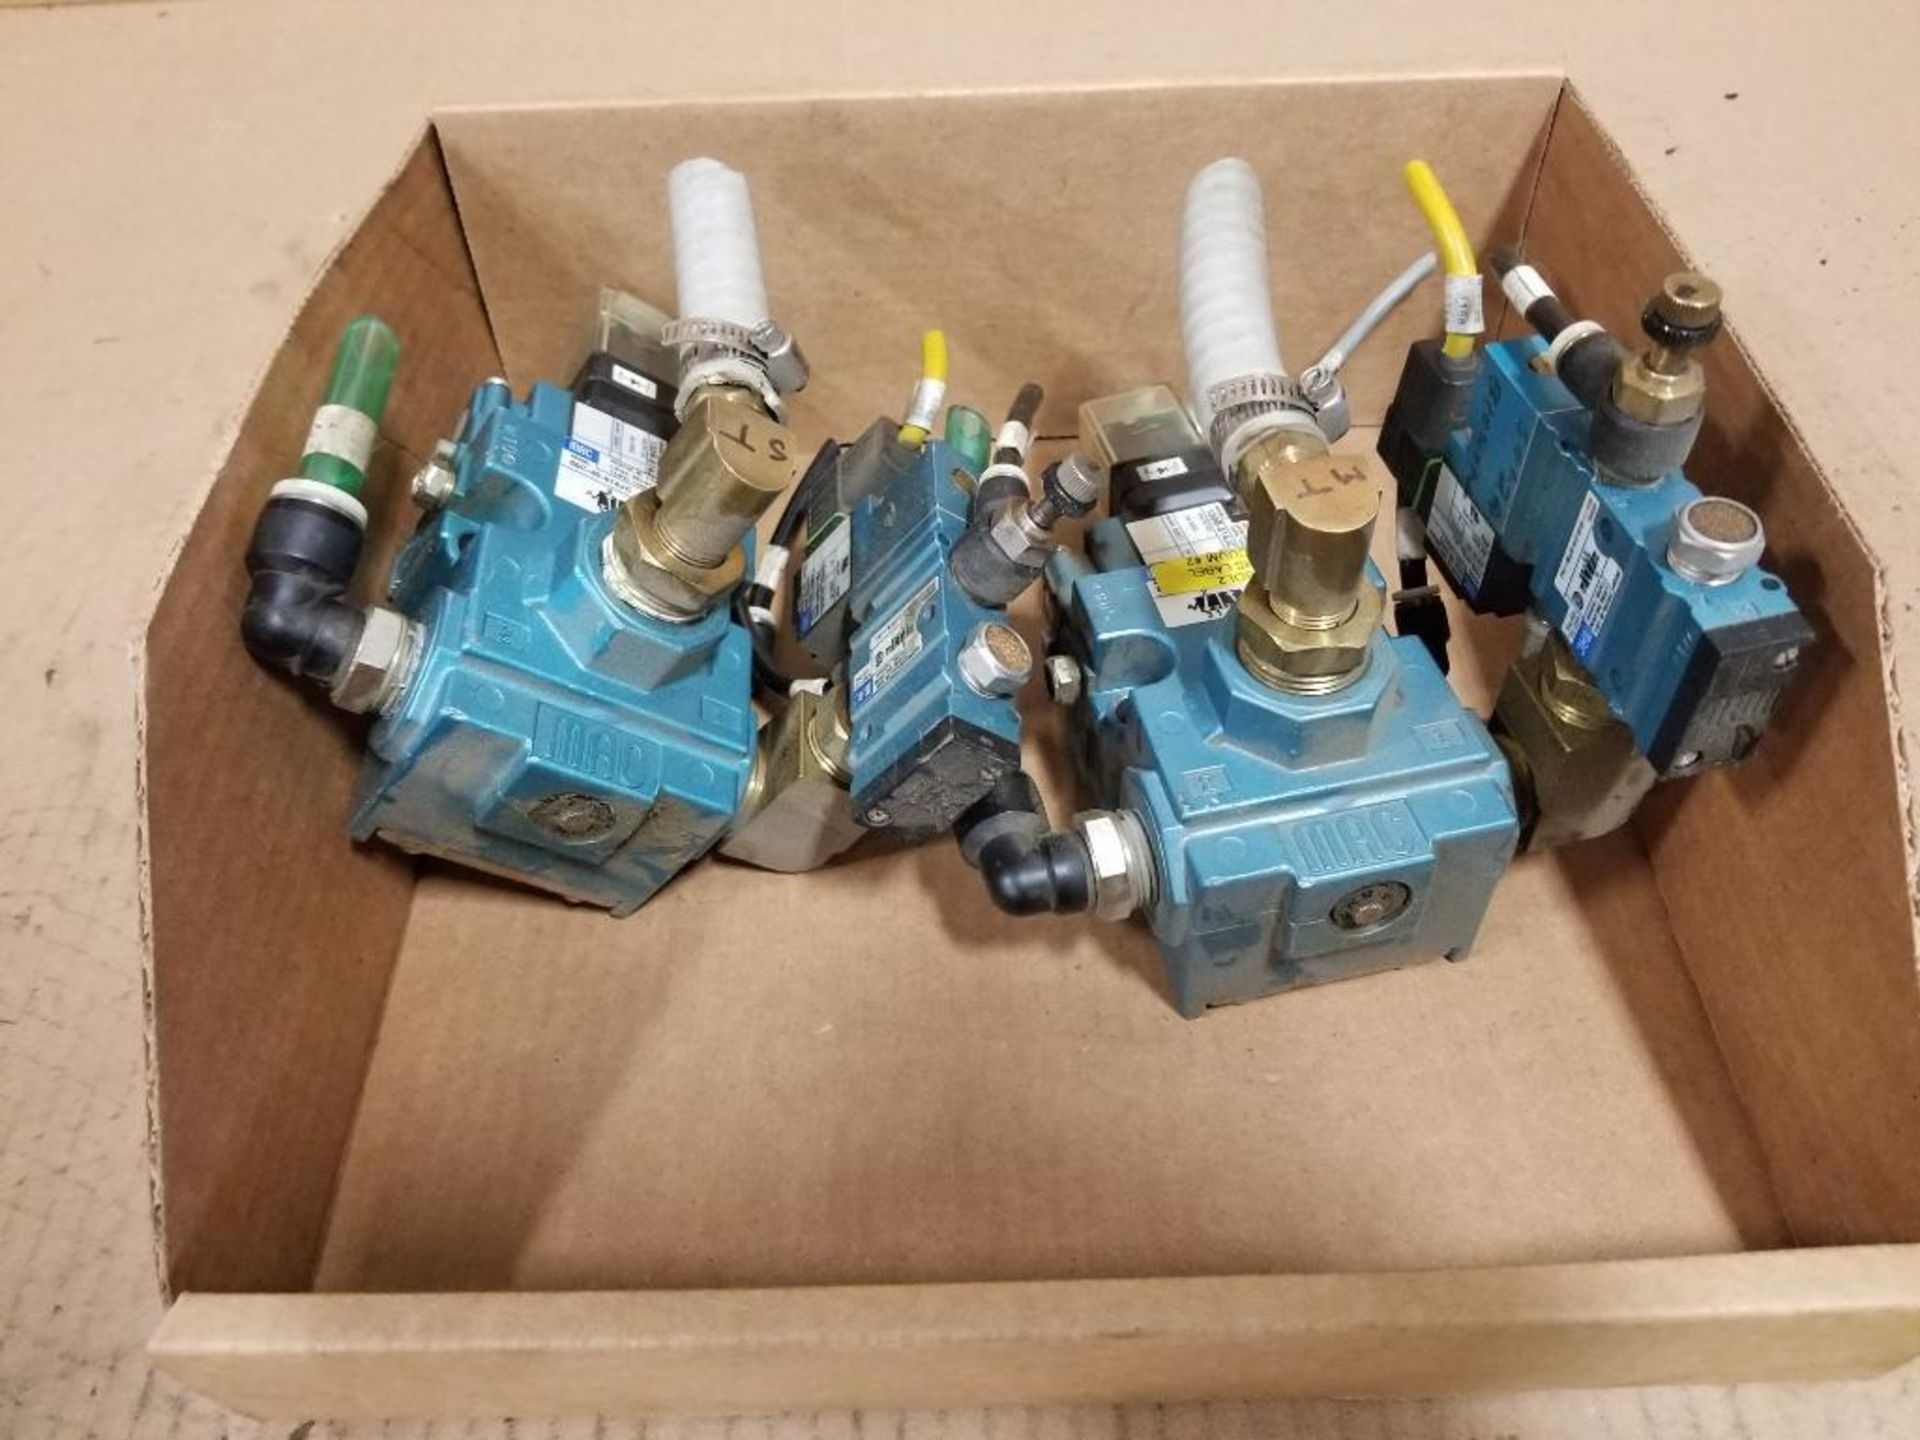 Assorted Mac valves.